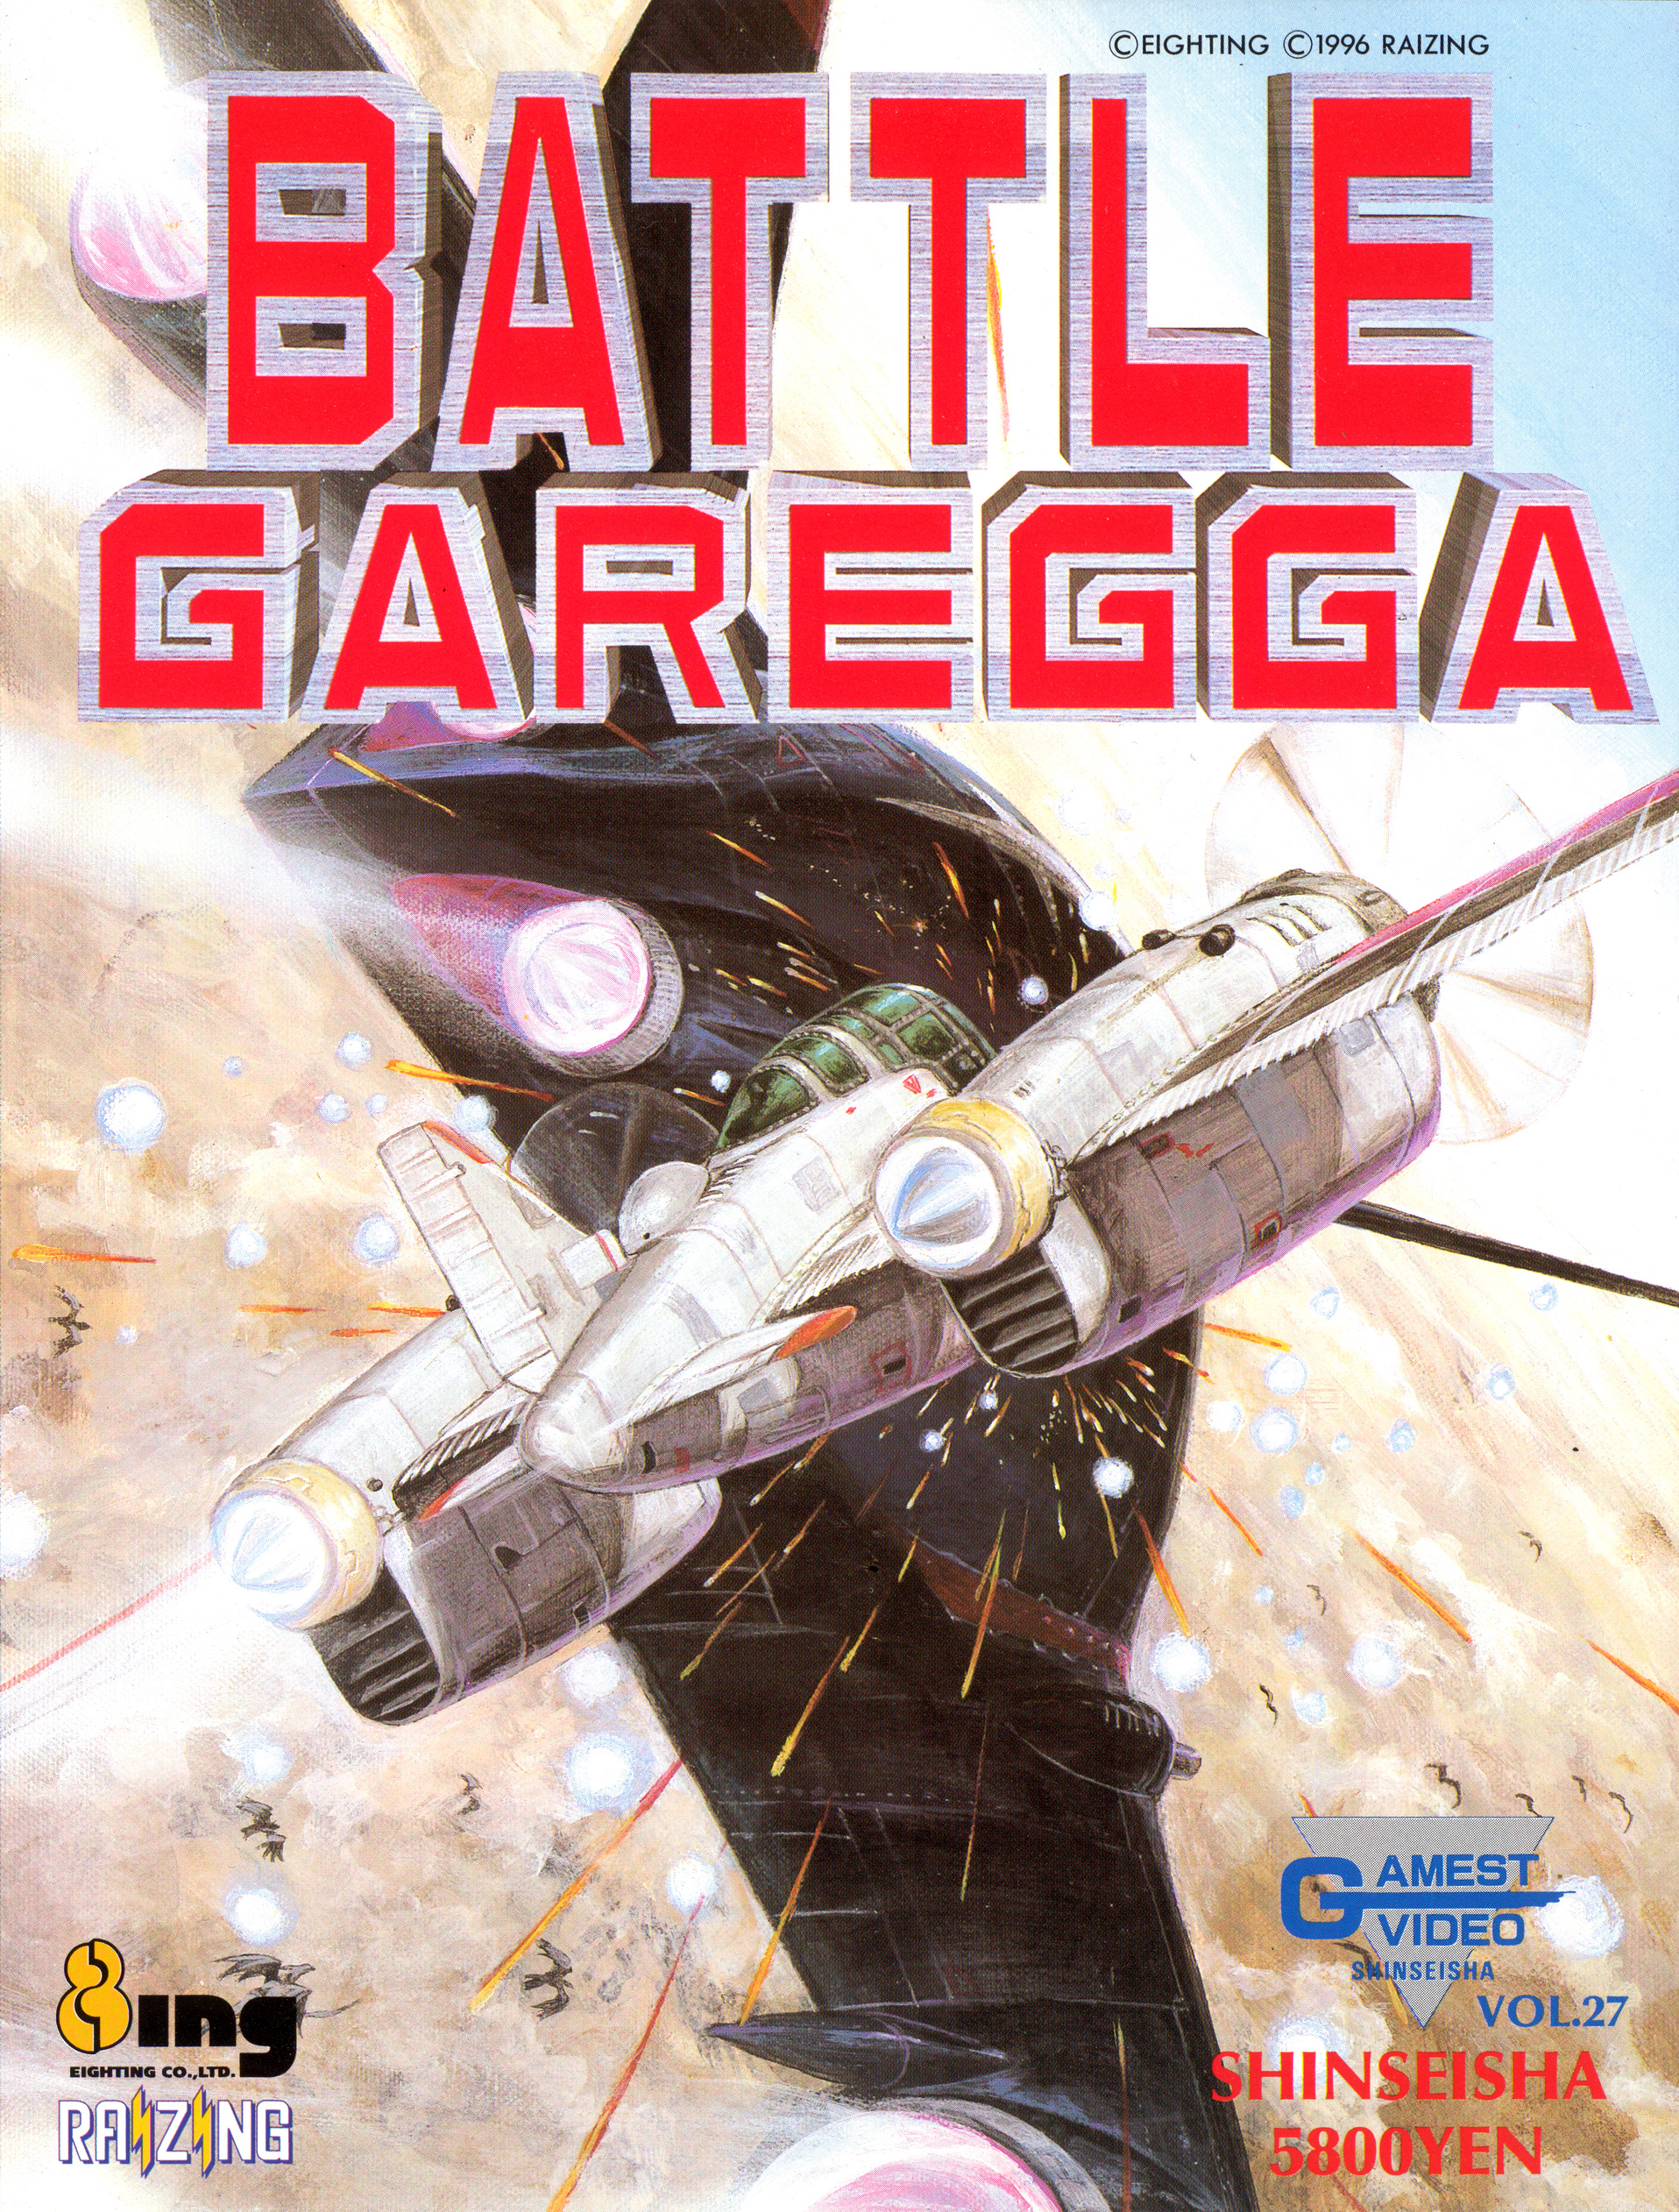 Battle Garegga